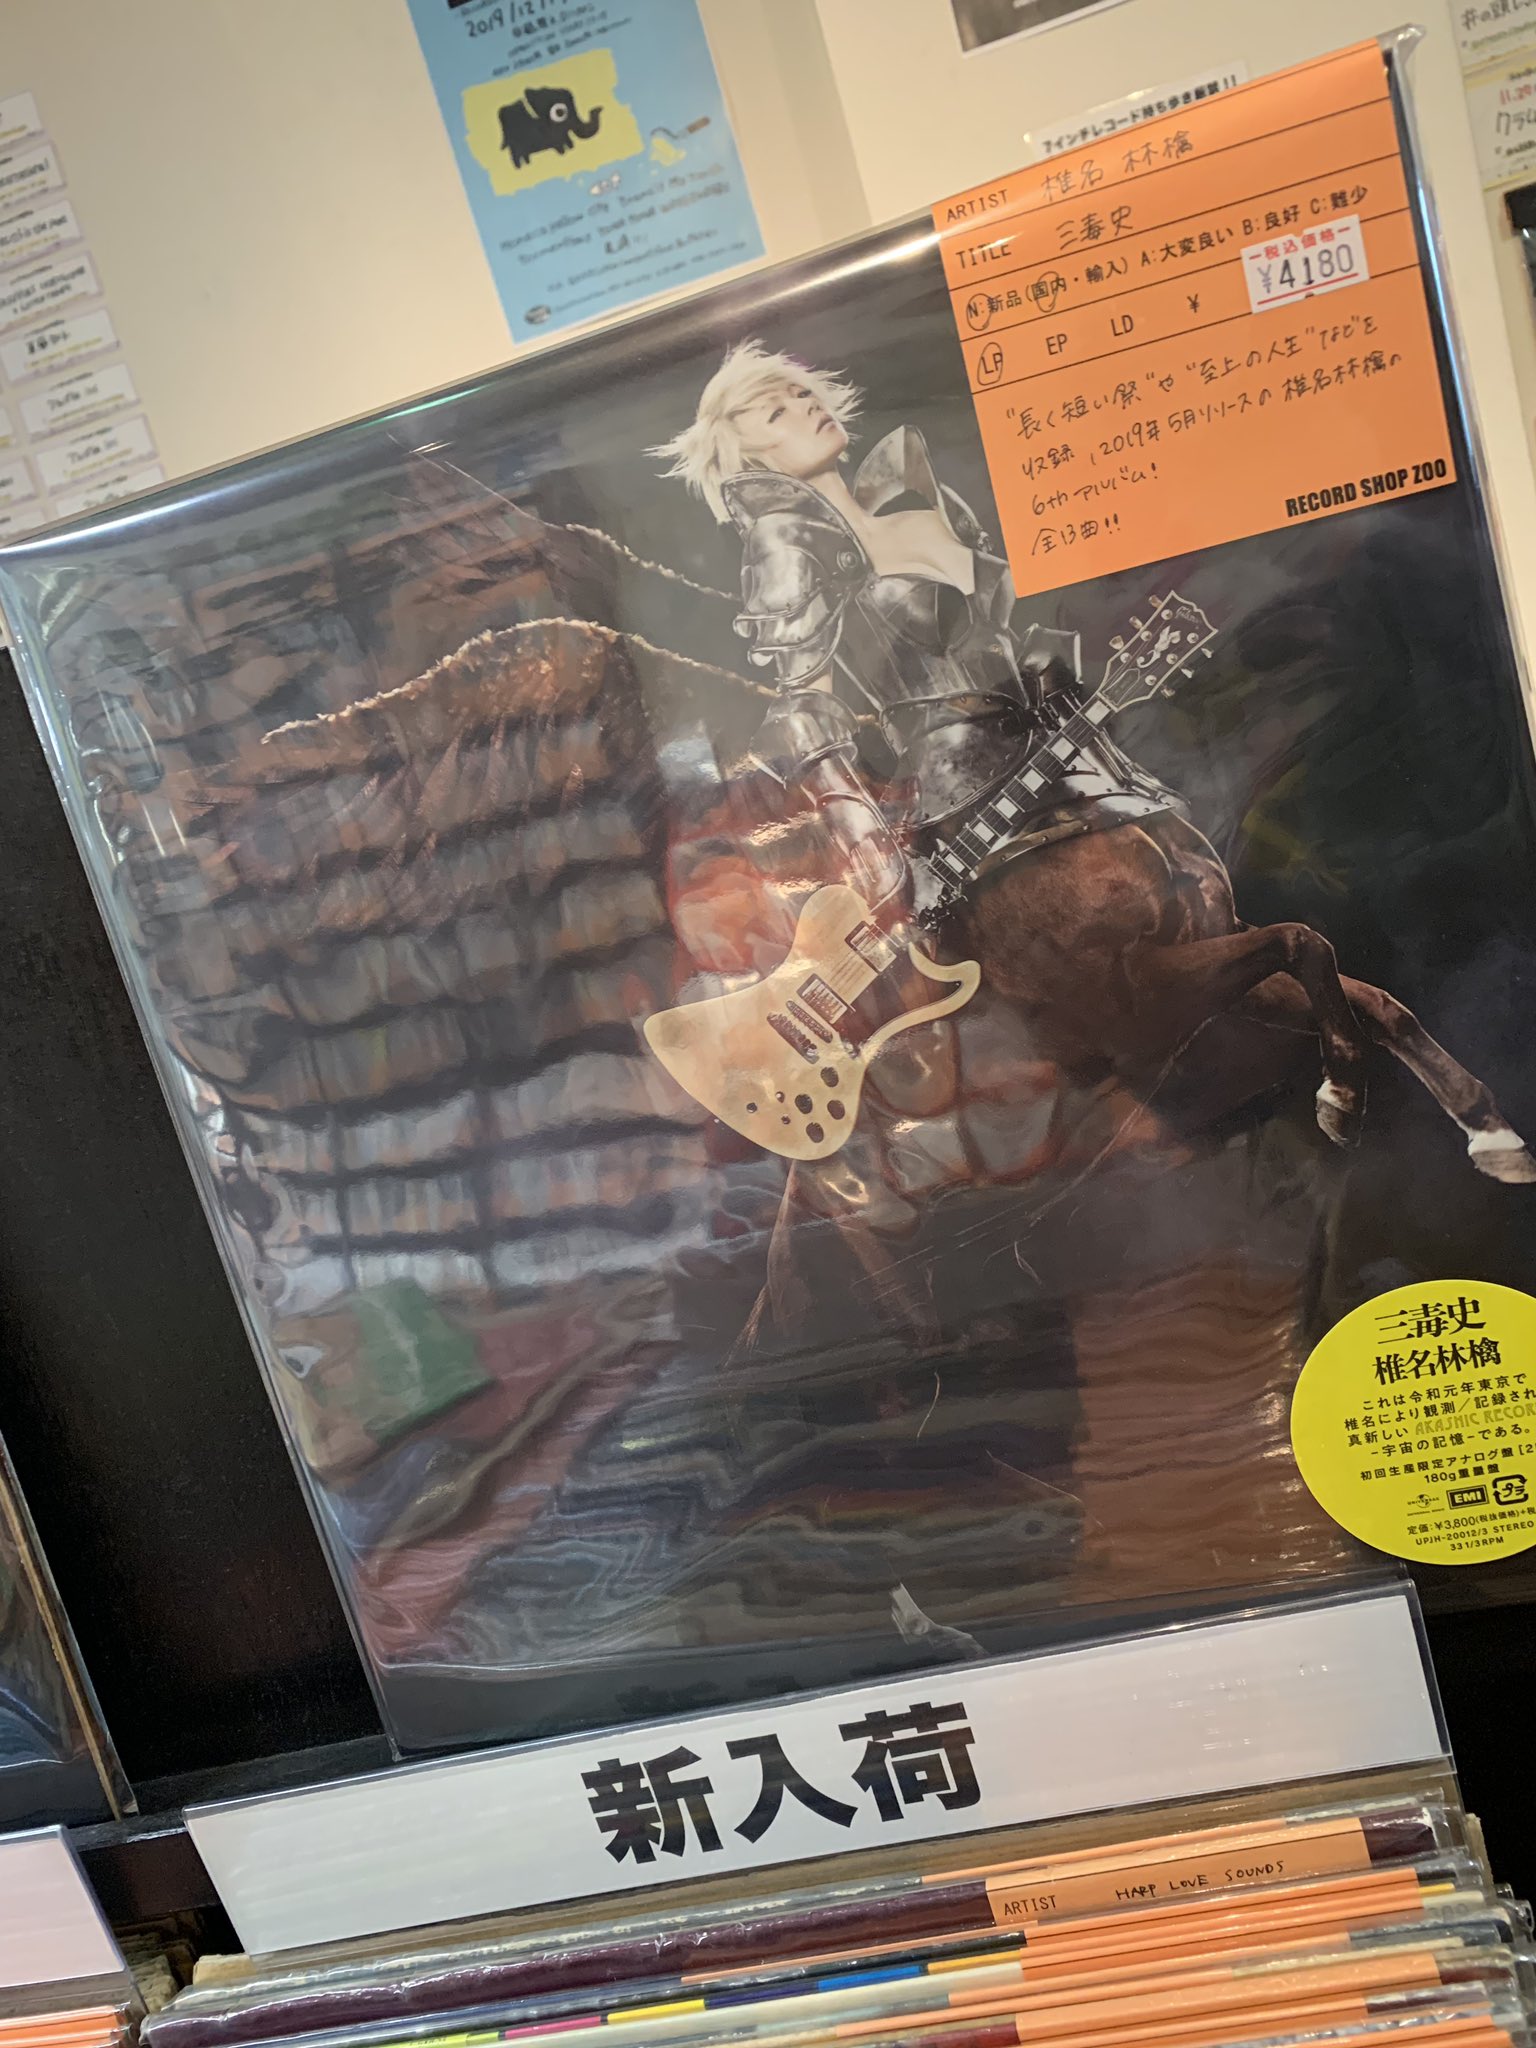 新品!椎名林檎『三毒史』アナログ盤 レコード LP | www.csi.matera.it